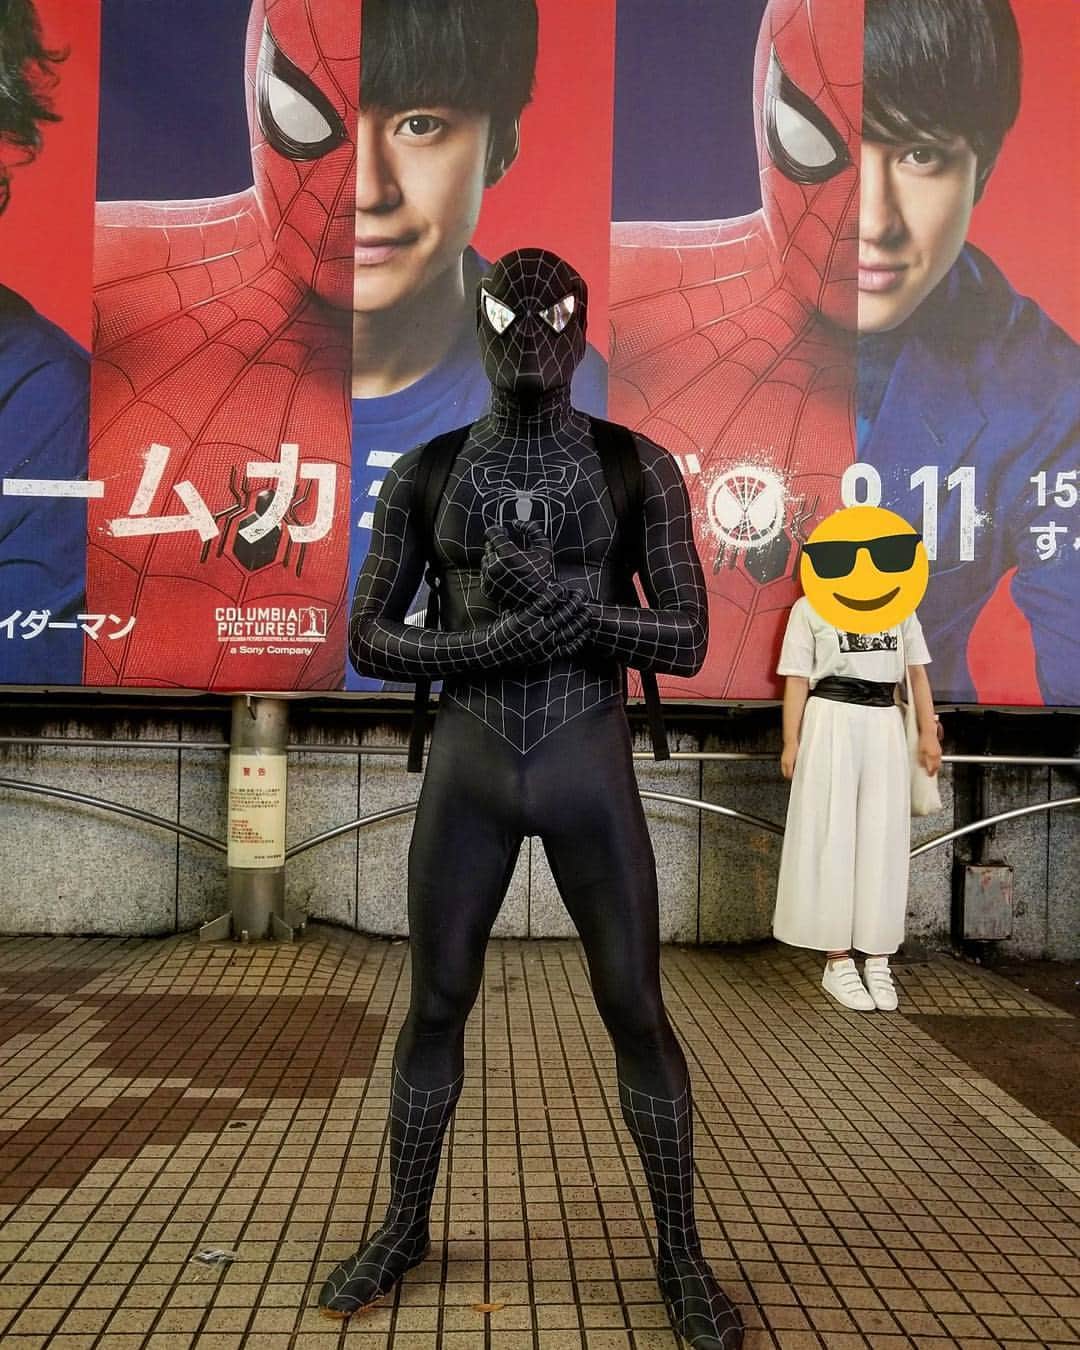 Japanese Spidermanのインスタグラム：「明日からスパイダーマン公開。  今夜、六本木ヒルズでオールナイトで見に行く予定。  因みにお盆はステッカーも増刷したので休まずスパイダーマンを行います。  銀座、みなとみらい、表参道を中心にいると思います。  #スパイダーマン#spiderman#usj#コスプレ#cosplay#cosplayer #渋谷#銀座#みなとみらい#六本木ヒルズ#六本木#マーベル#夏休み#表参道#みなとみらい #関ジャニ#腹筋#公開初日」